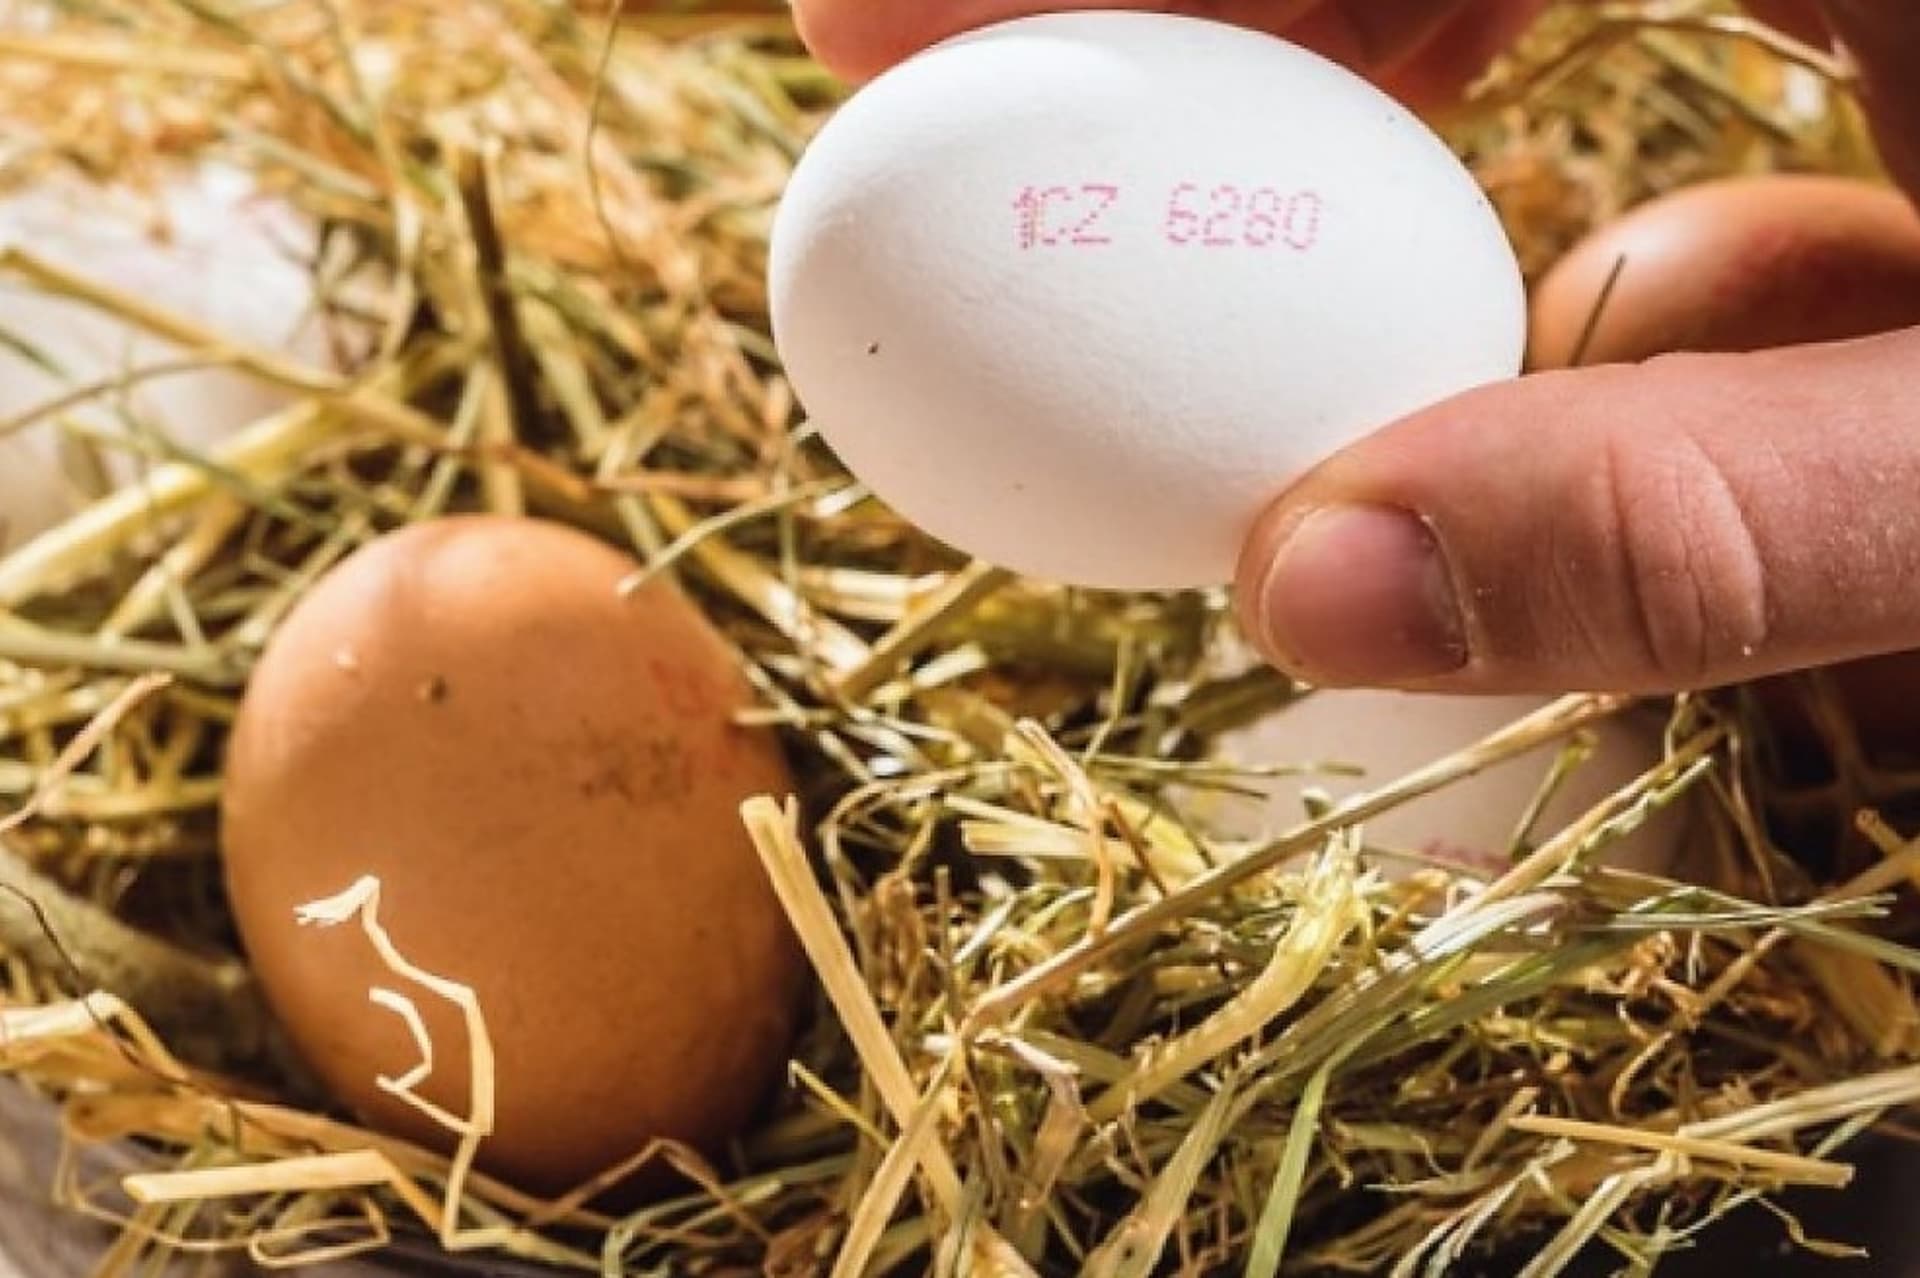 Původ vajec je uveden v kódu přímo na vejci. Tato informace by měla být vysvětlena na balení, často na vnitřní straně víčka.